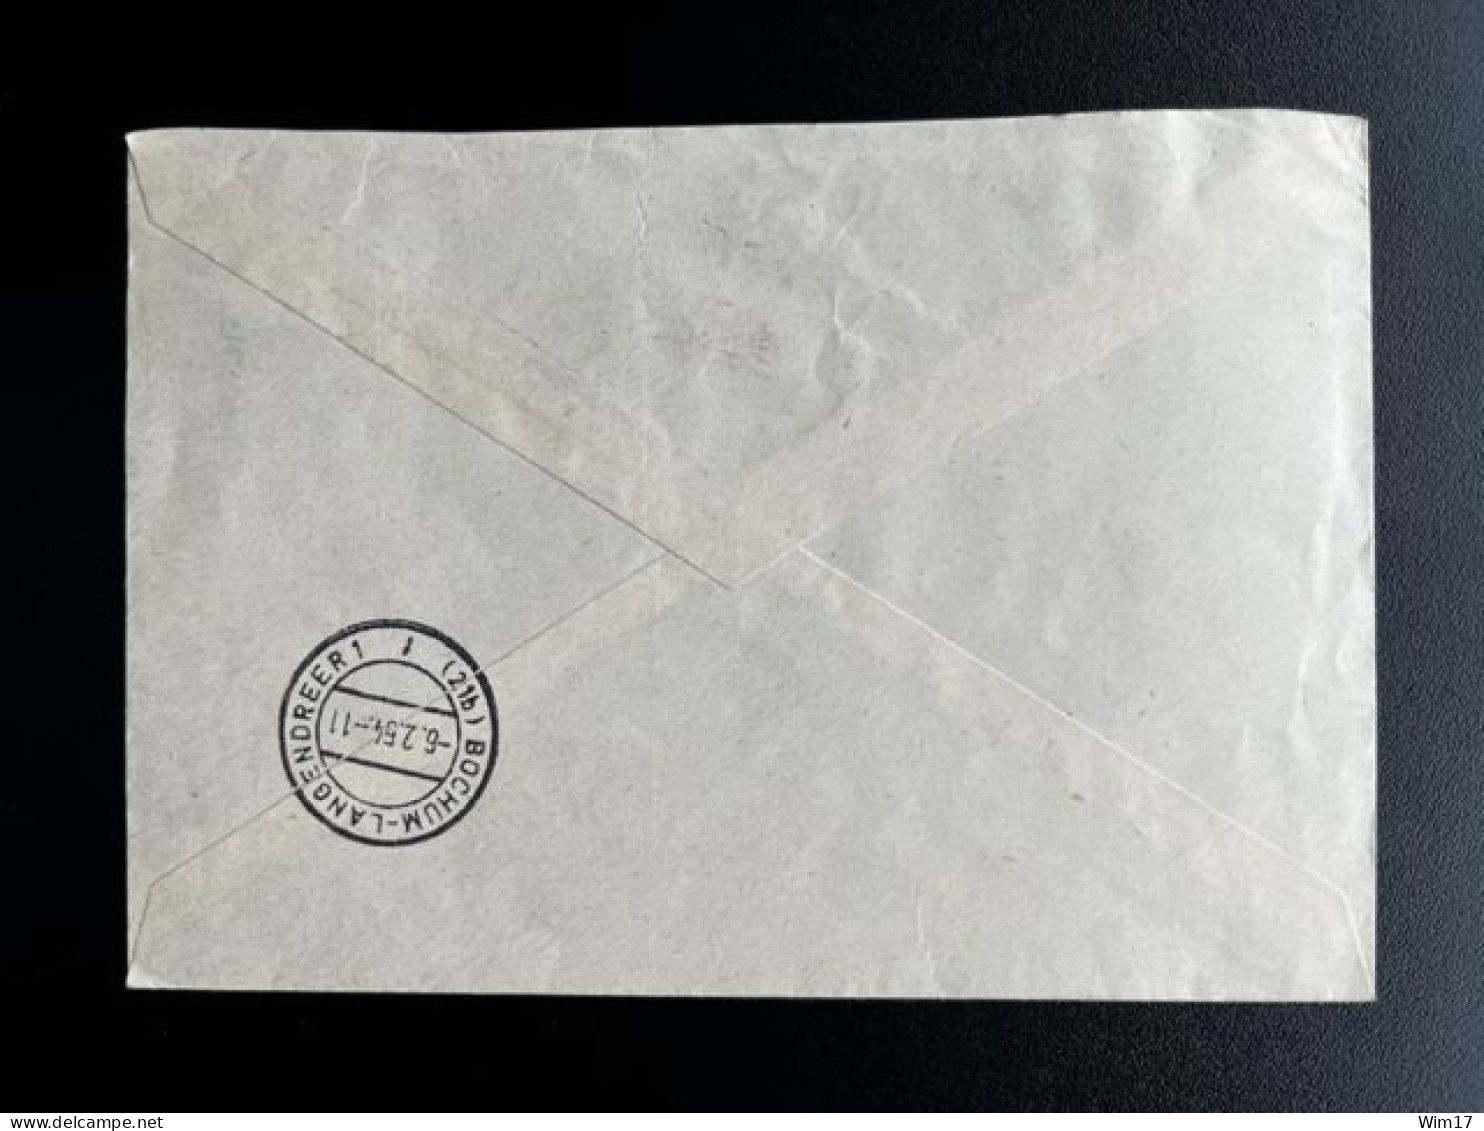 GERMANY SAAR SARRE SAARLAND 1954 REGISTERED LETTER HOMBURG TO BOCHUM 05-02-1954 DUITSLAND DEUTSCHLAND EINSCHREIBEN - Postal  Stationery